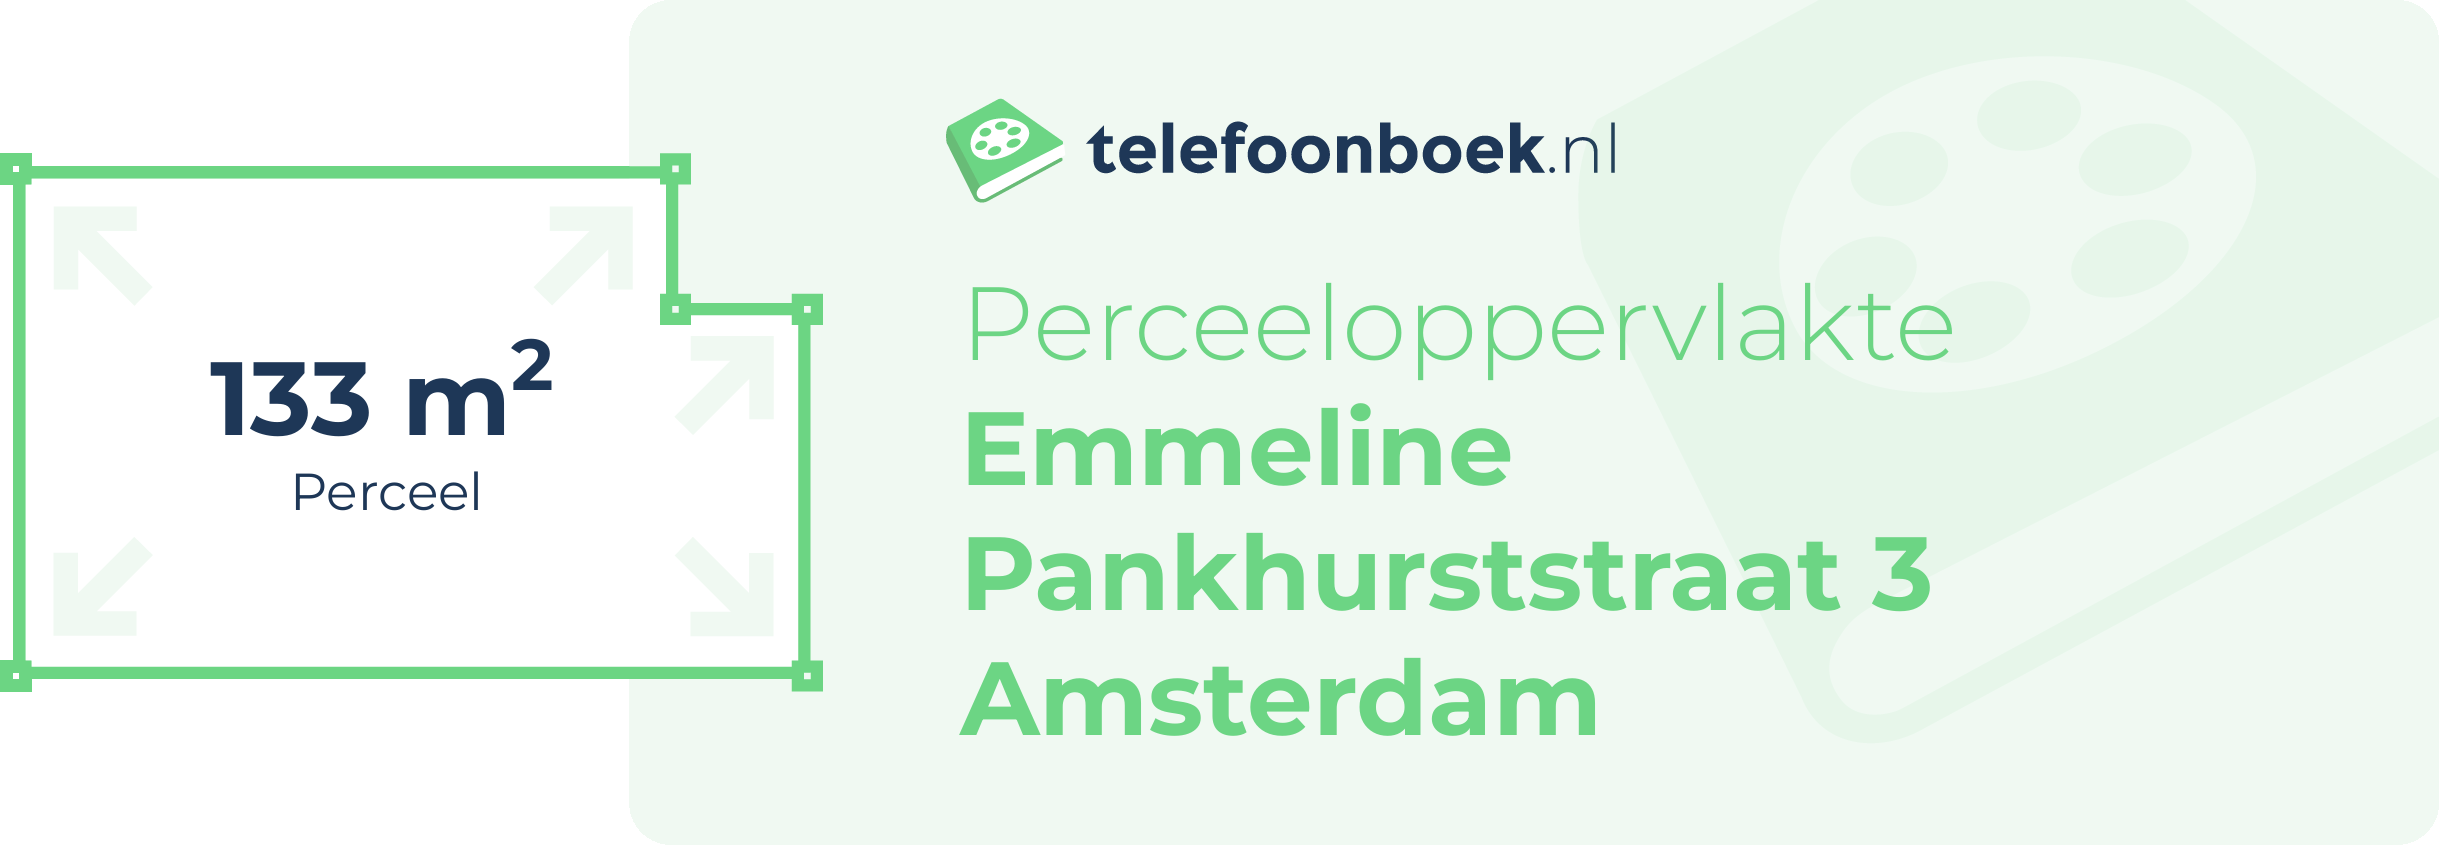 Perceeloppervlakte Emmeline Pankhurststraat 3 Amsterdam